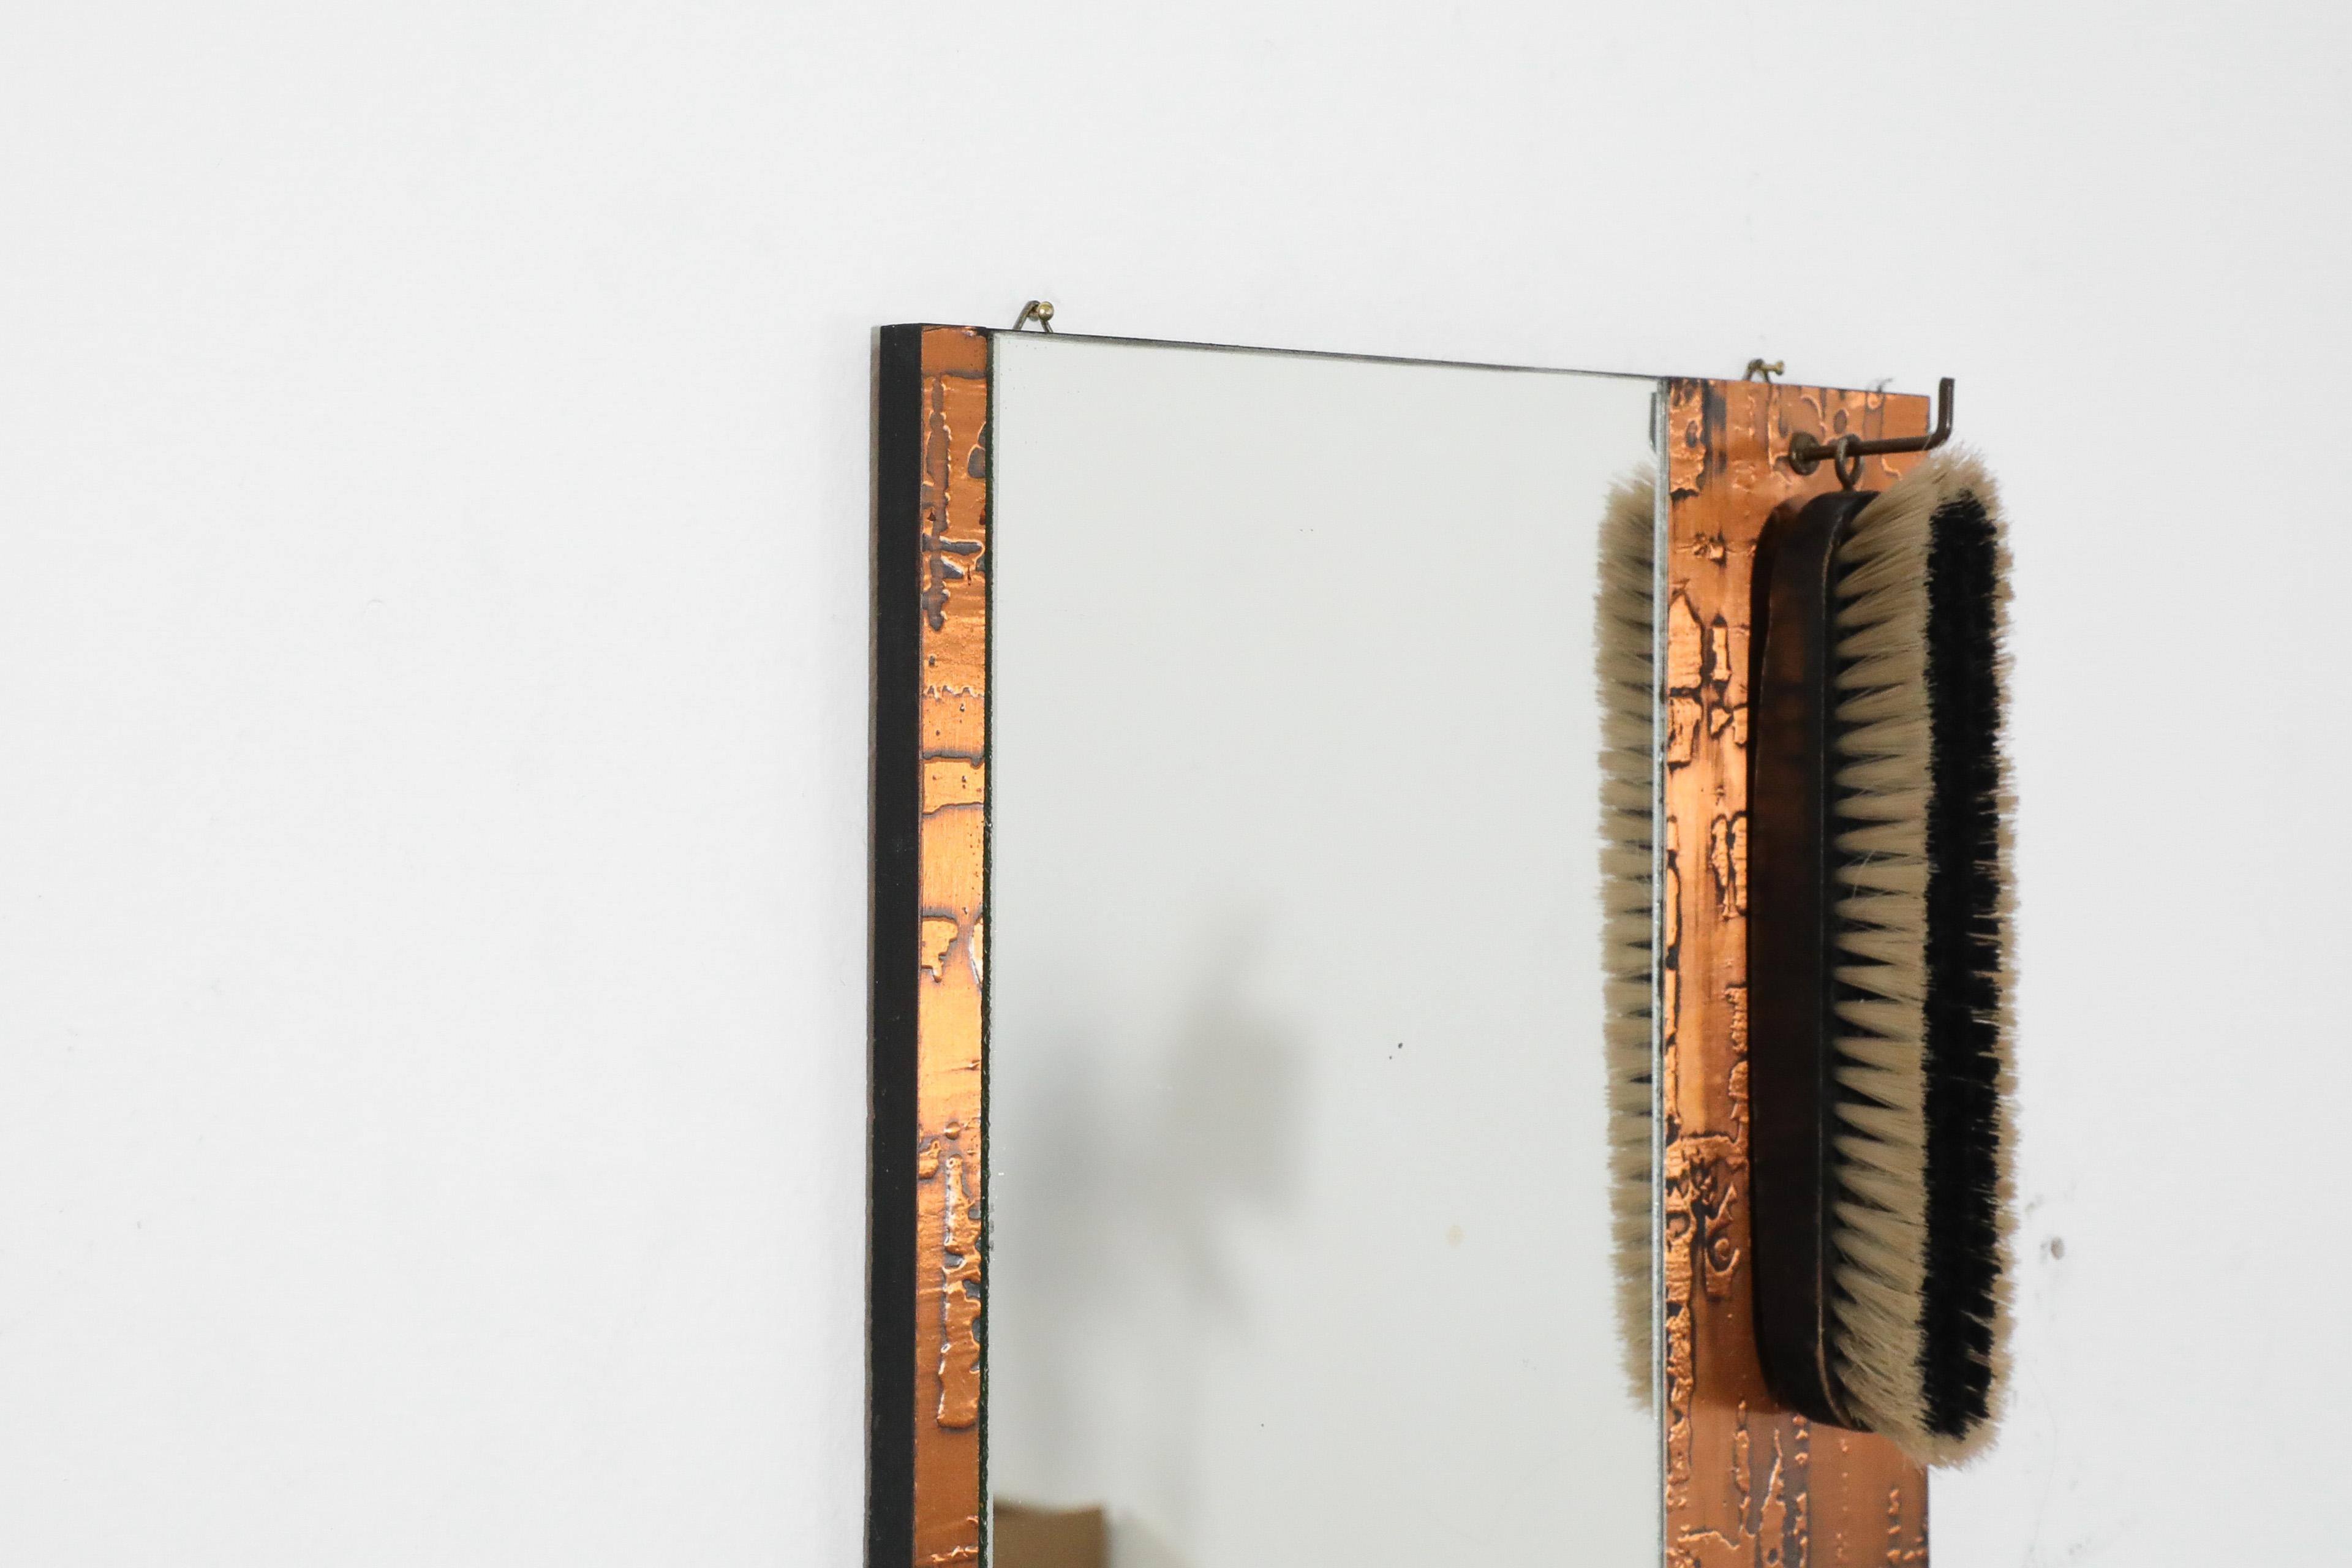 1970s, Santambrogio & De Berti styl Wall Mount Copper Butler's Mirror with Brush For Sale 4